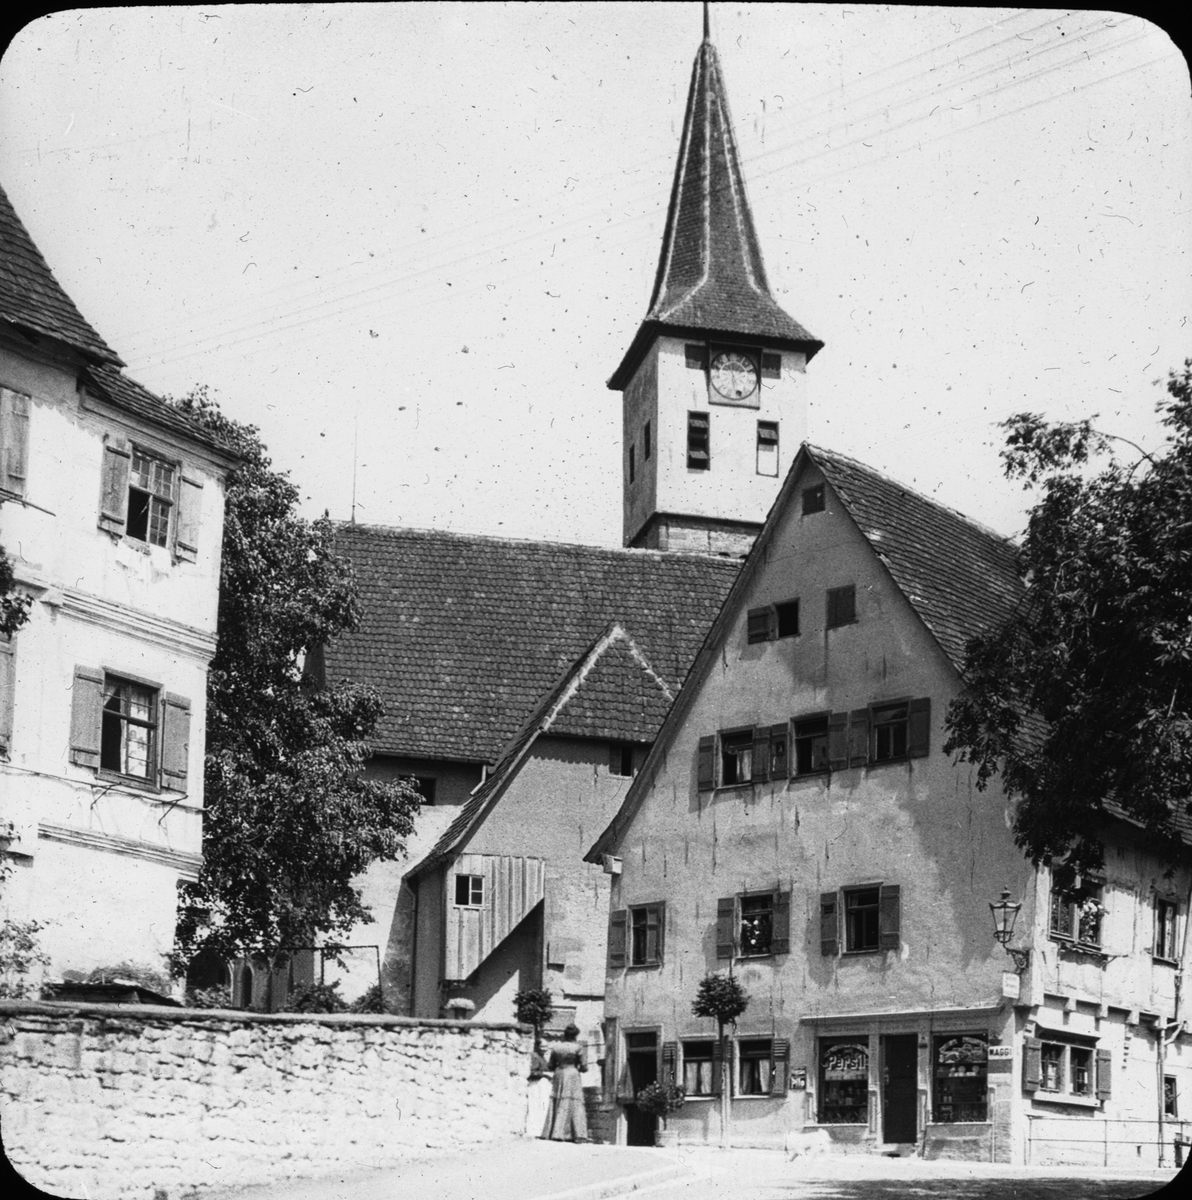 Skioptikonbild med motiv från Schwäbisch Hall med St. Urbanskirche.

Bilden har förvarats i kartong märkt: Resan 1911. Schwäbische Hall. XVIII.